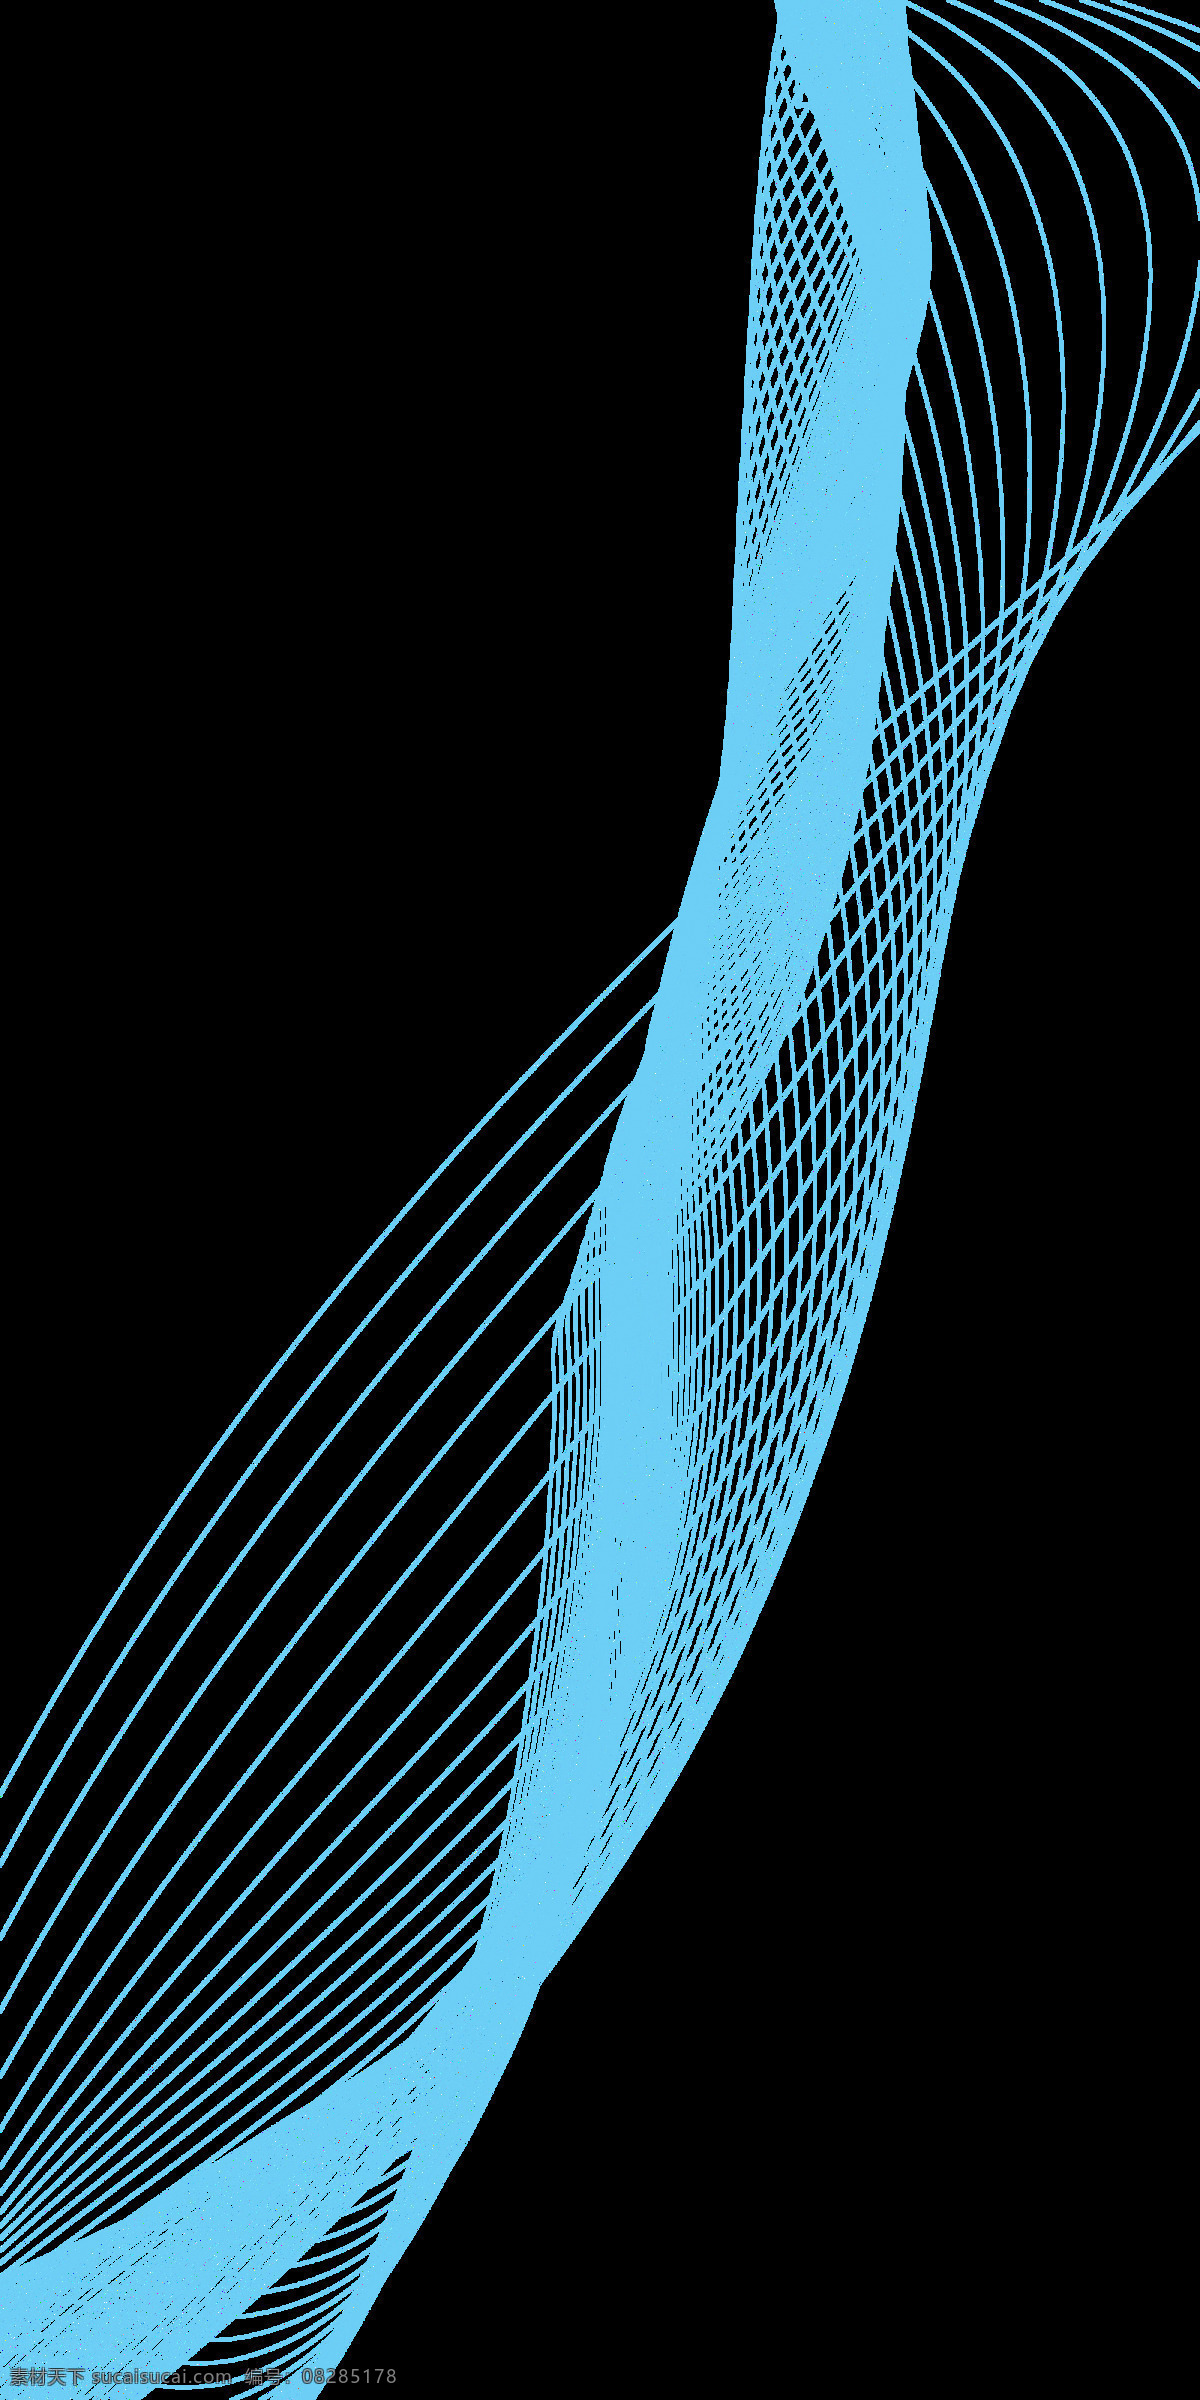 简单线条 曲线 动感 动感曲线 曲线素材 线条 彩色线条 波浪 网线 未来感 曲线组 渐变 渐变曲线 线条素材 3d 3d曲线 3d动感曲线 曲线设计 设计素材 背景素材 科技线条 未来线条 调和曲线 底纹边框 条纹线条 素材系列